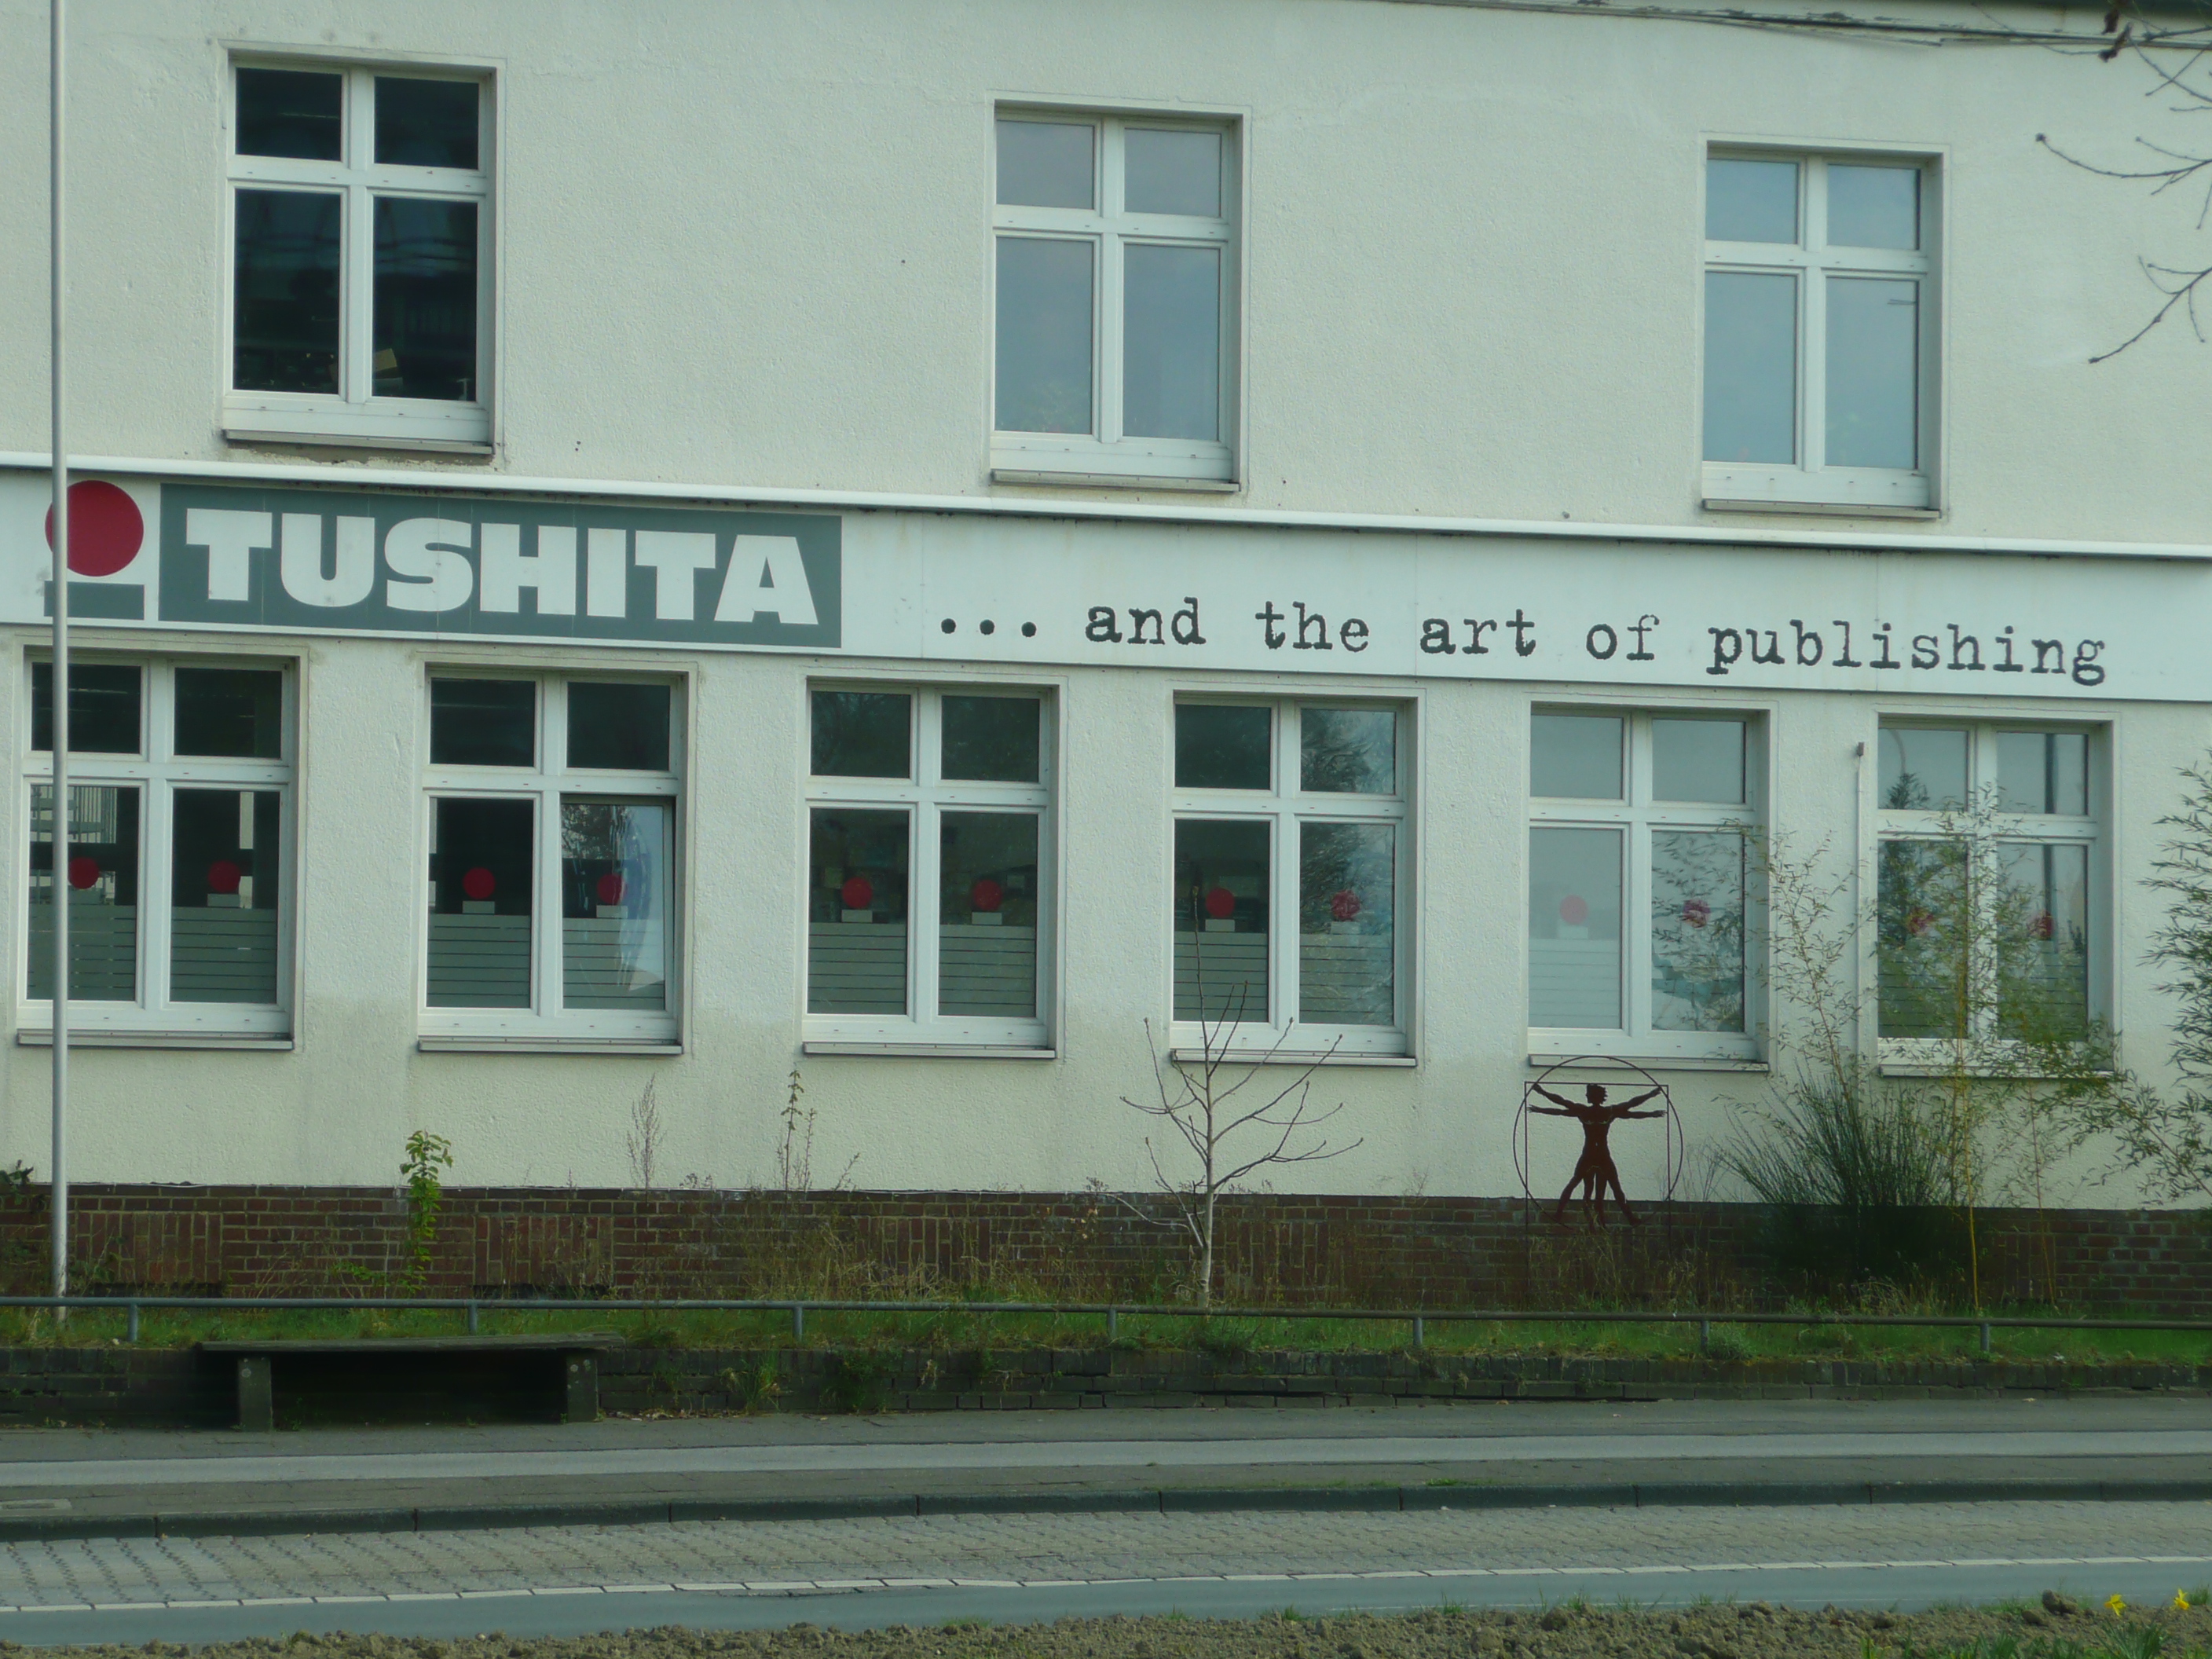 Bild 1 Tushita Verlags GmbH in Duisburg